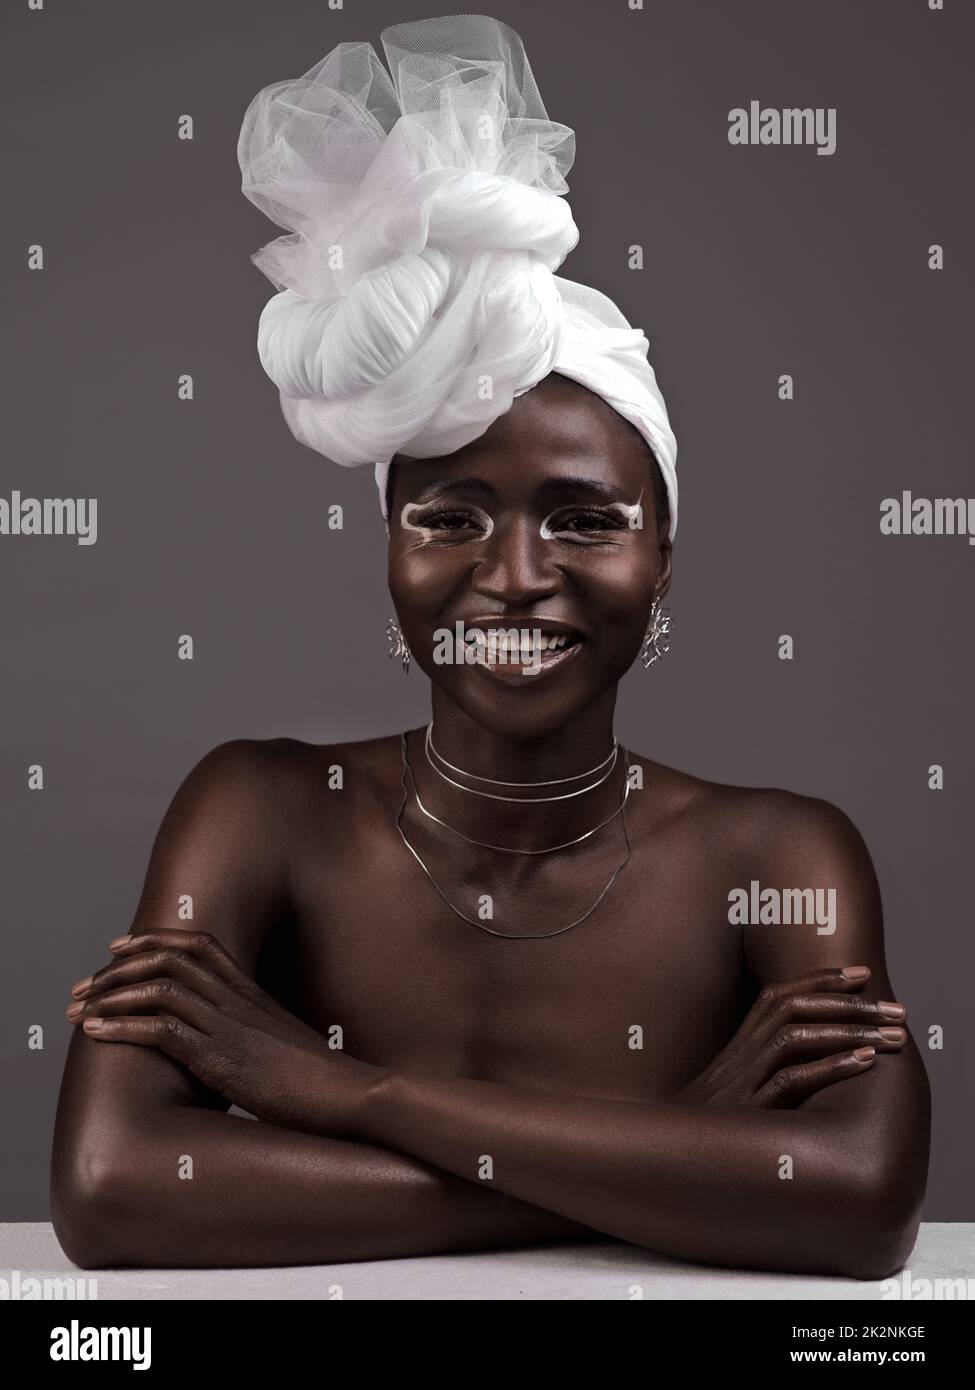 Mehr als nur Stoff, es ist meine Krone. Studioporträt einer attraktiven jungen Frau, die in traditioneller afrikanischer Kleidung vor grauem Hintergrund posiert. Stockfoto